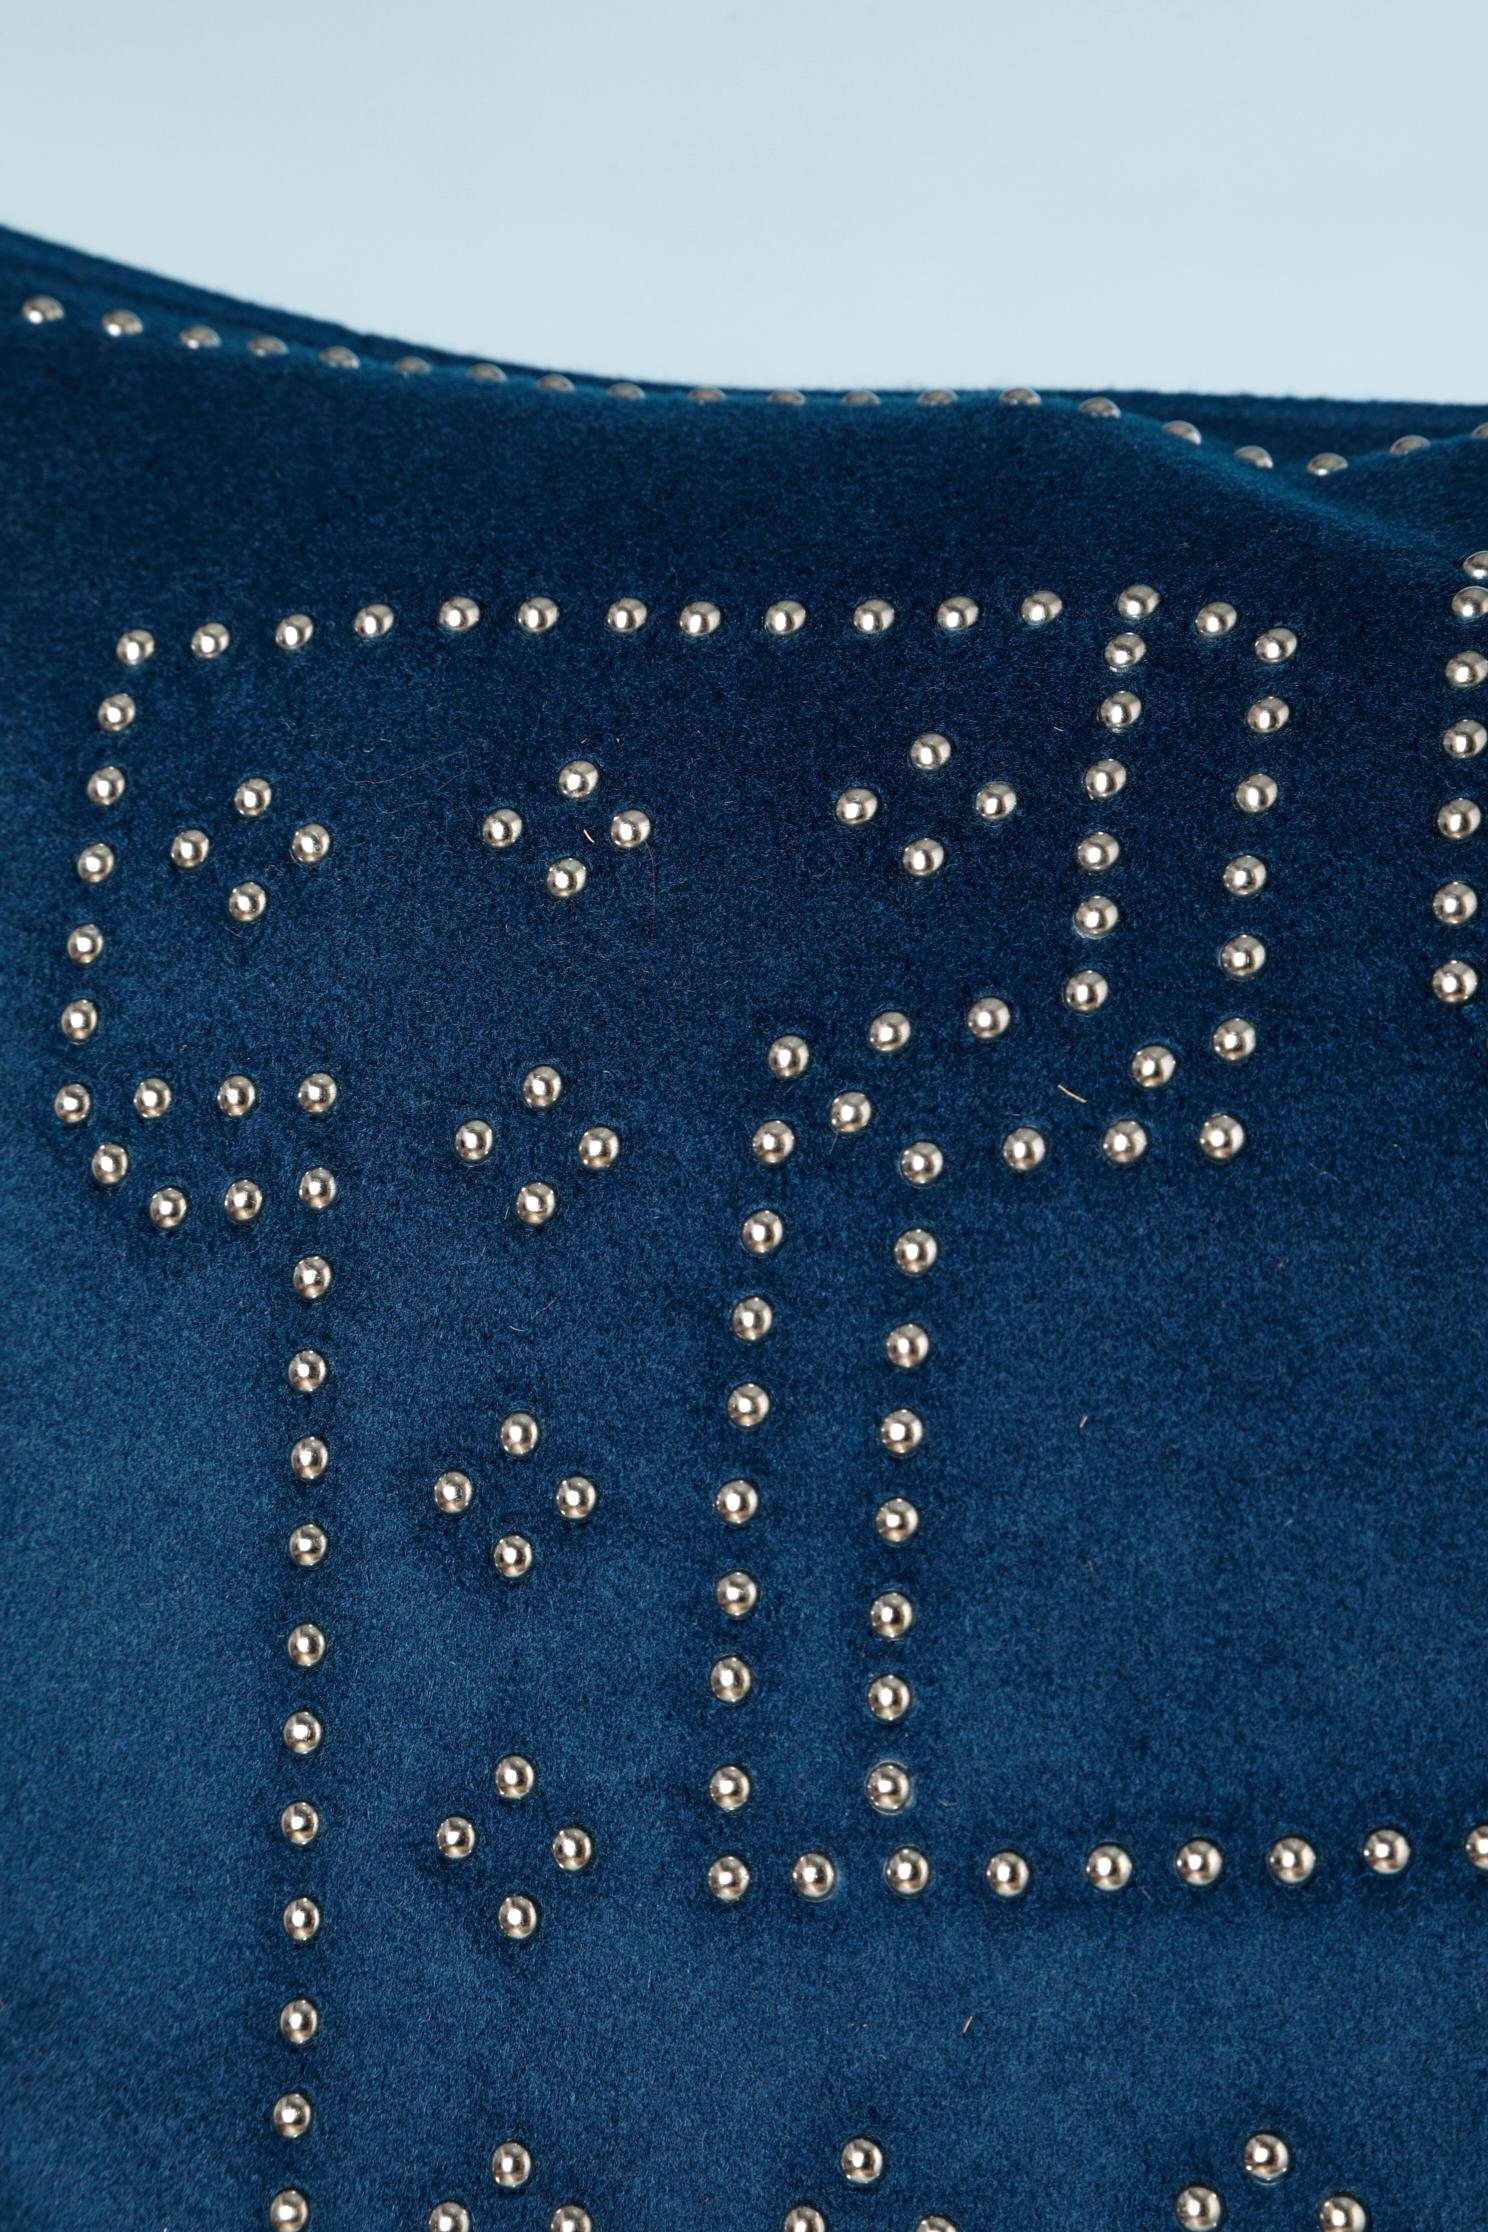 Nachtblaues Kaschmirkissengehäuse mit Metallnieten „H“.
GRÖSSE 48 cm x 48 cm 
10 Stücke in der gleichen Größe, in derselben Farbe erhältlich